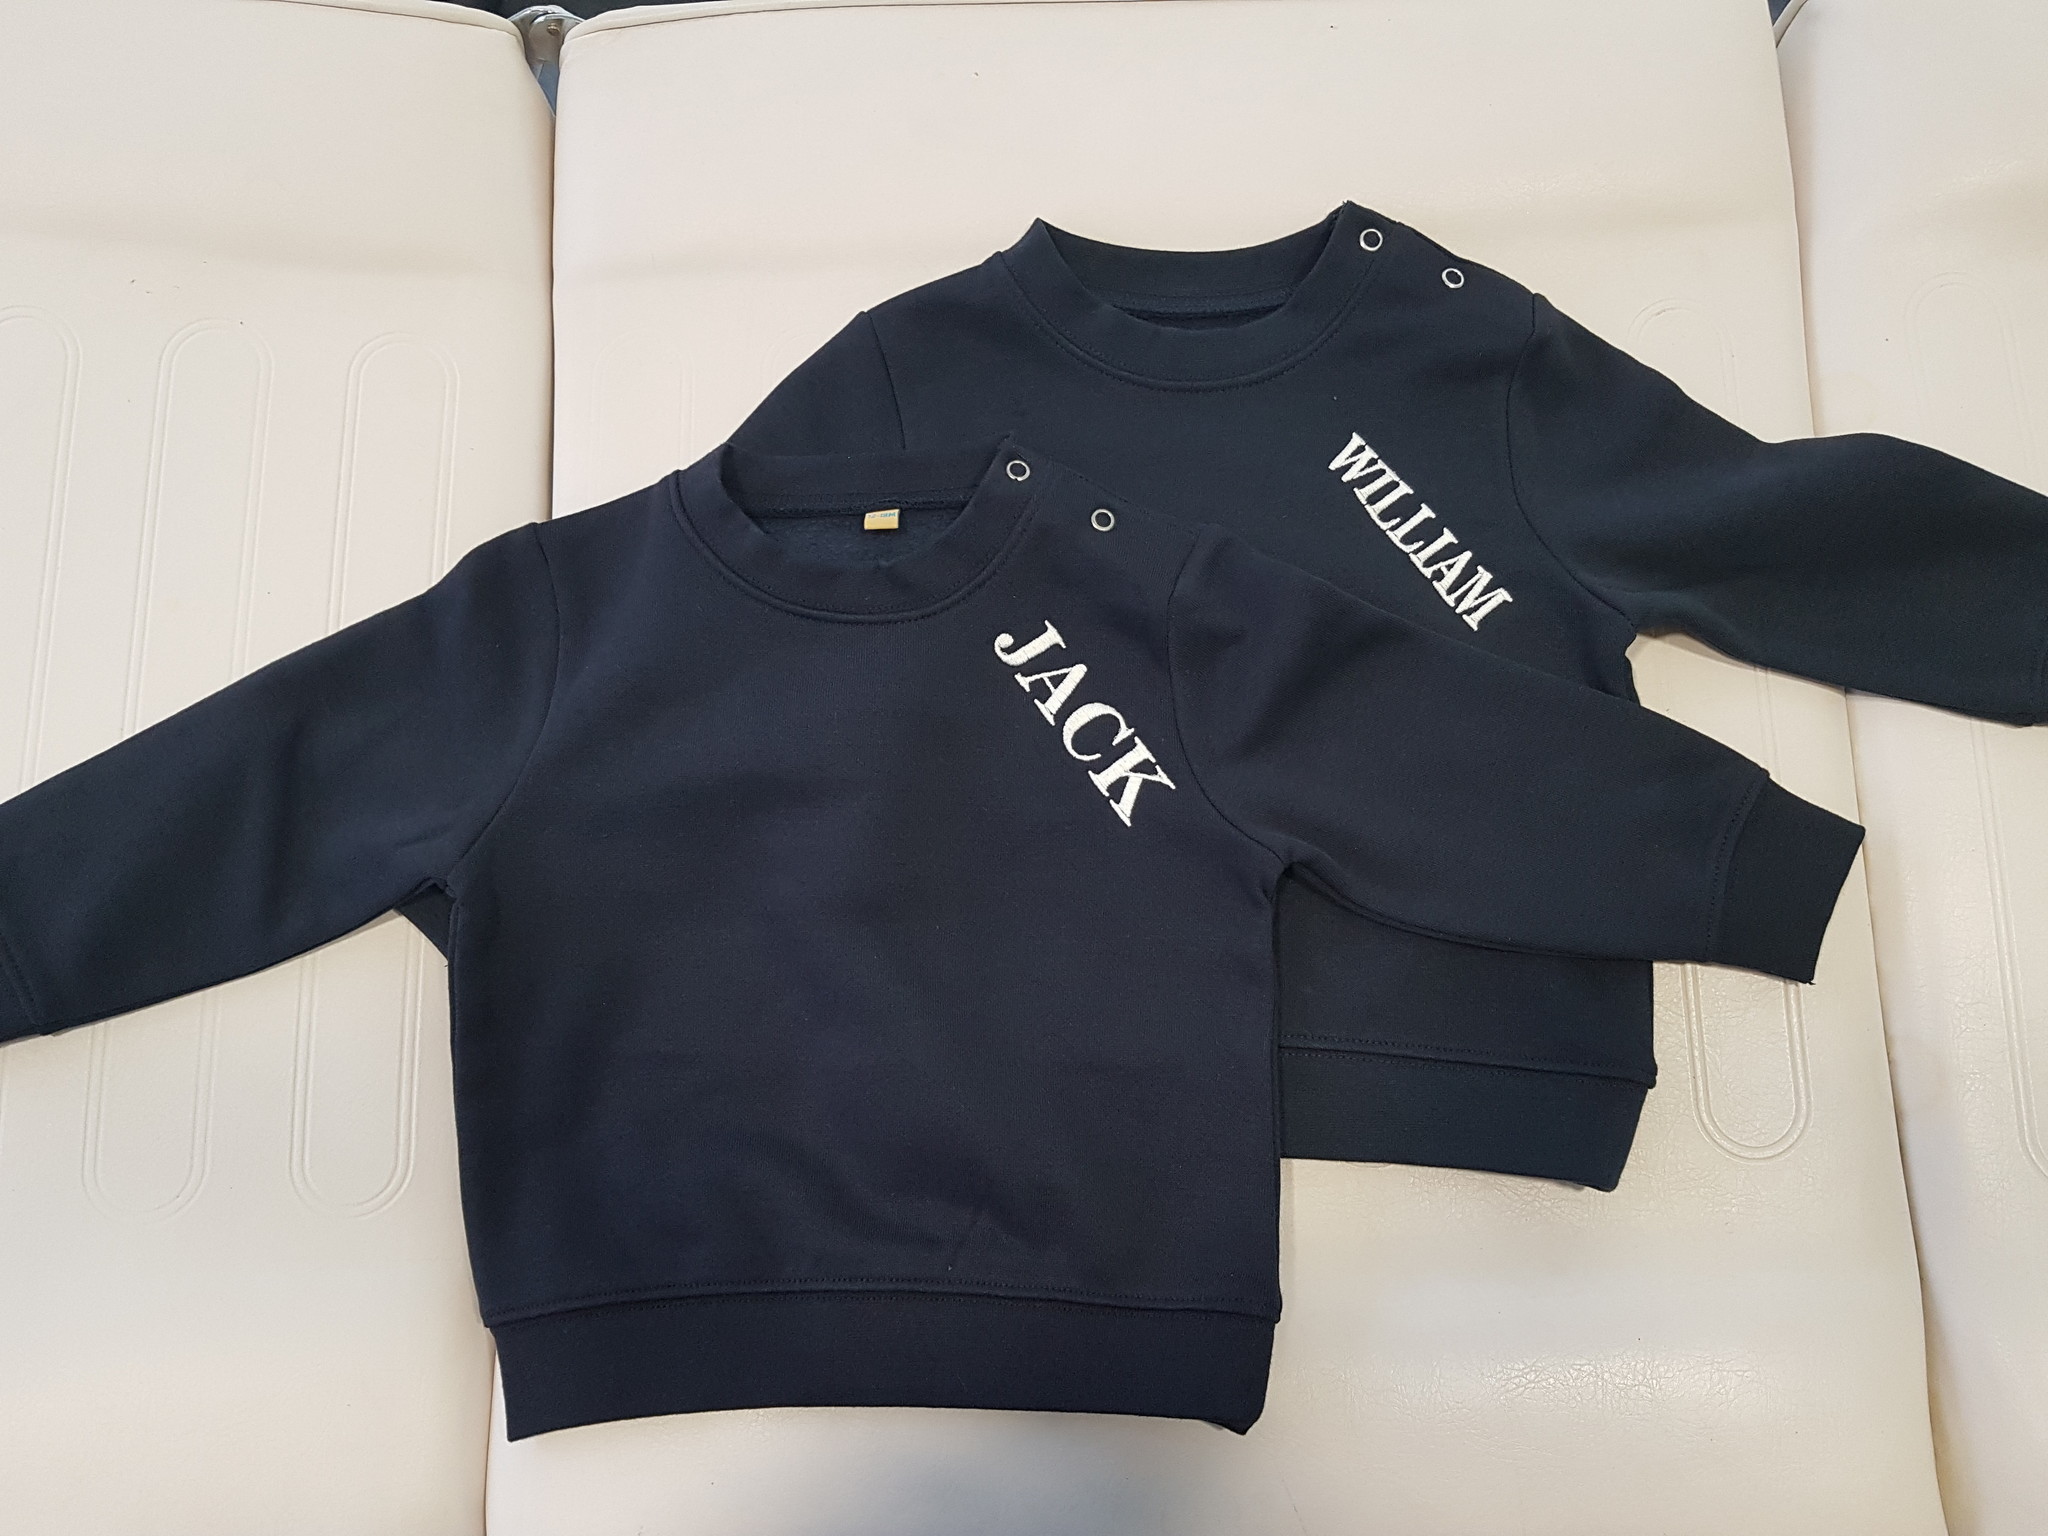 Navy kinder trui met naam geborduurd (6 maanden - 4 jaar) Star Queen